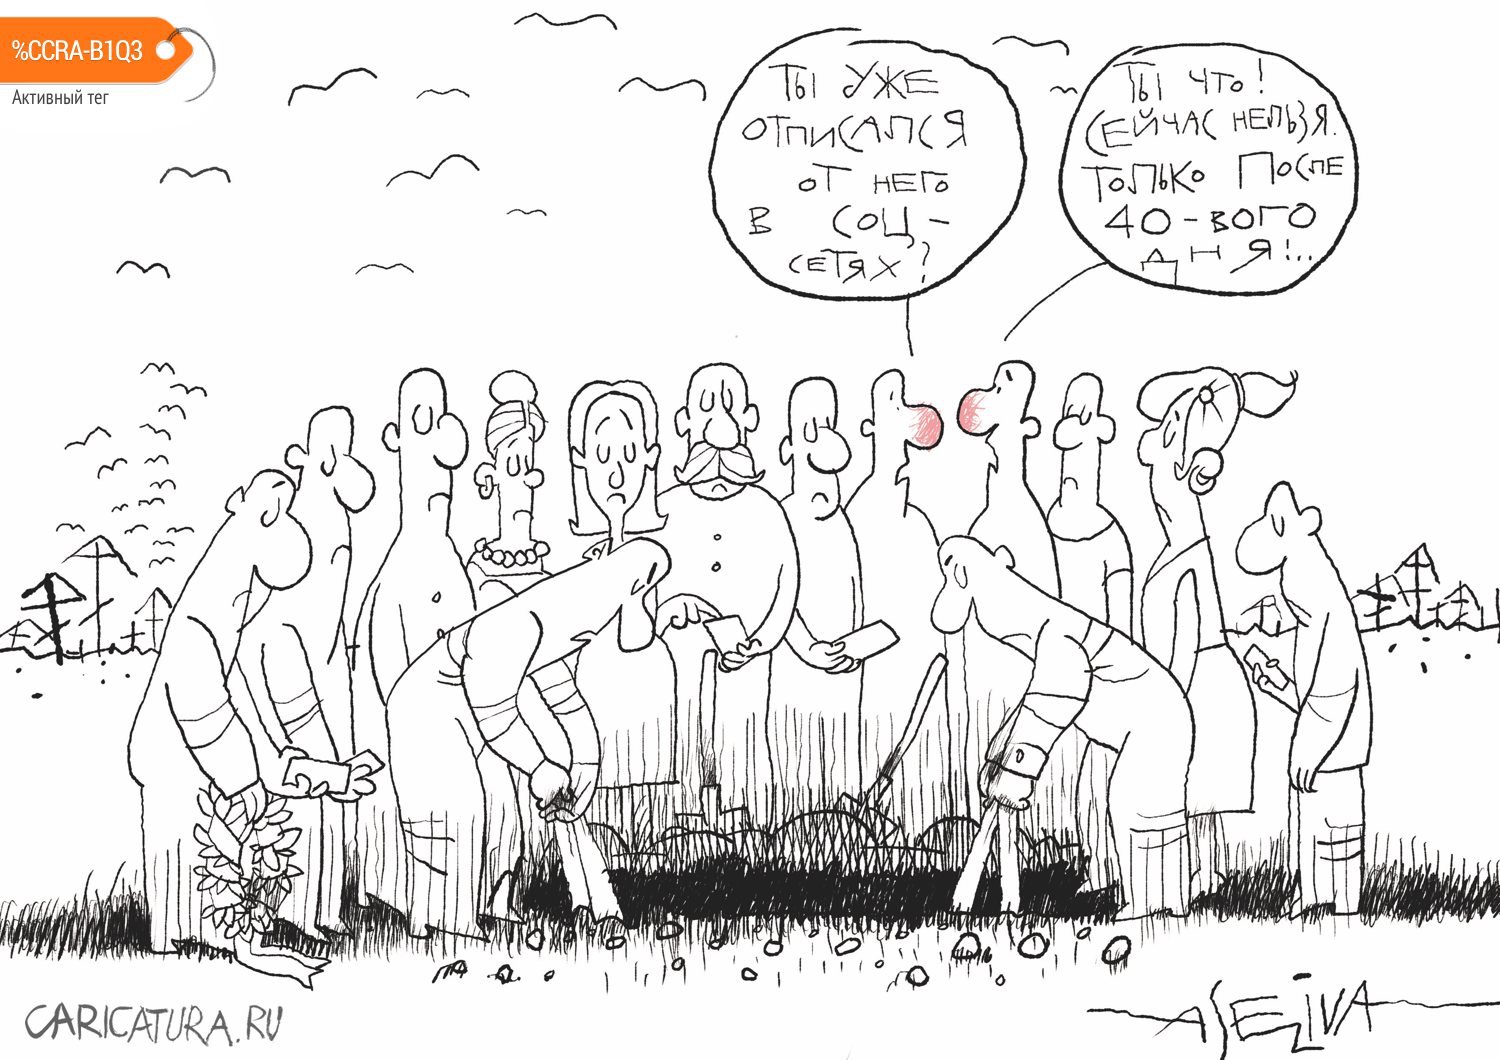 Карикатура "Соцсети и летальный исход", Андрей Селиванов